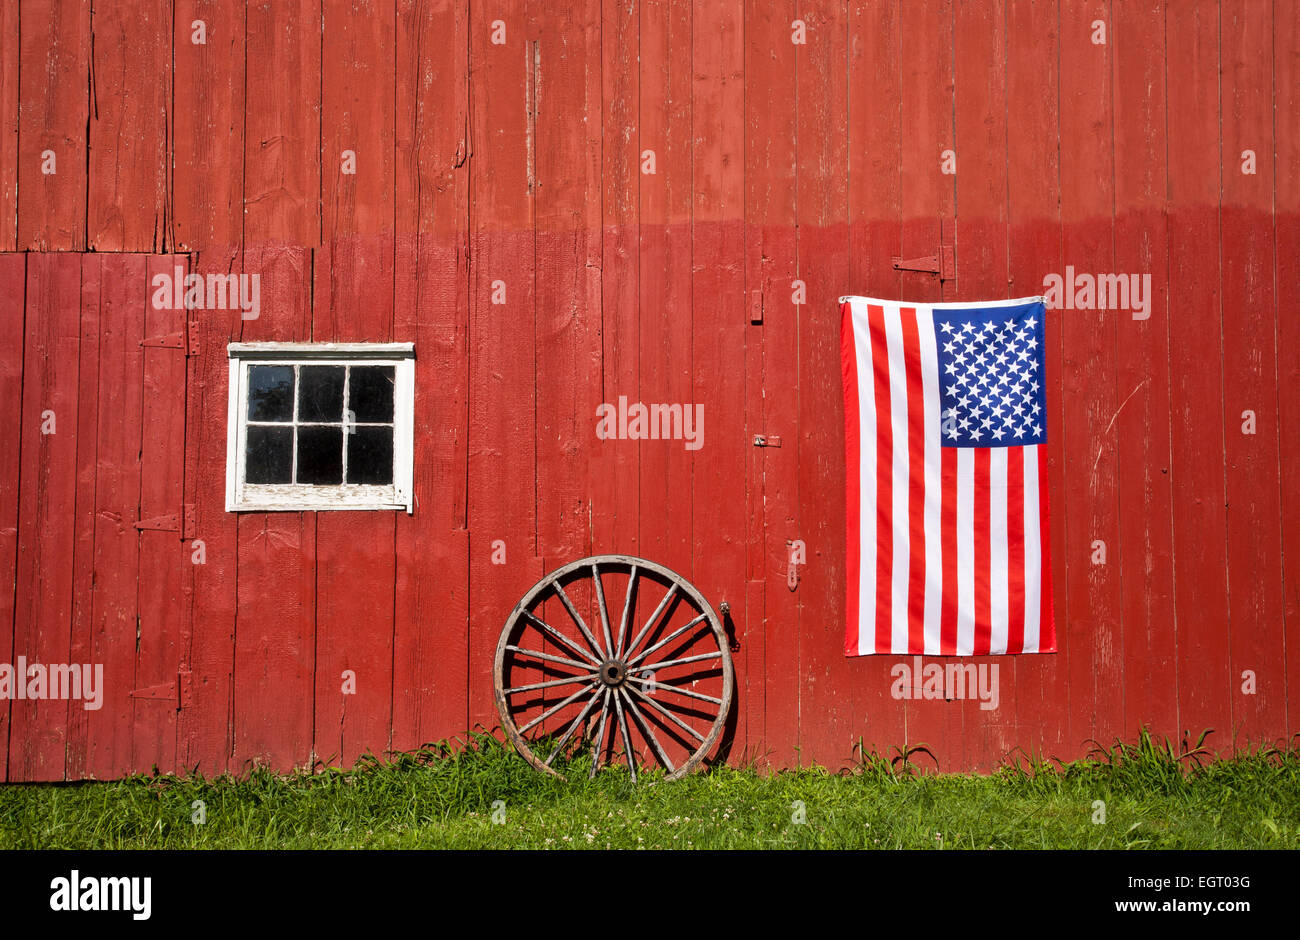 Historische rote Scheune, US-Flagge und ein antikes Wagenrad auf einem Bauernhof, Middlesex County, Monroe Twp., New Jersey, USA, Amerikanisch 10,38 MB, Dt Aug 2013 Stockfoto